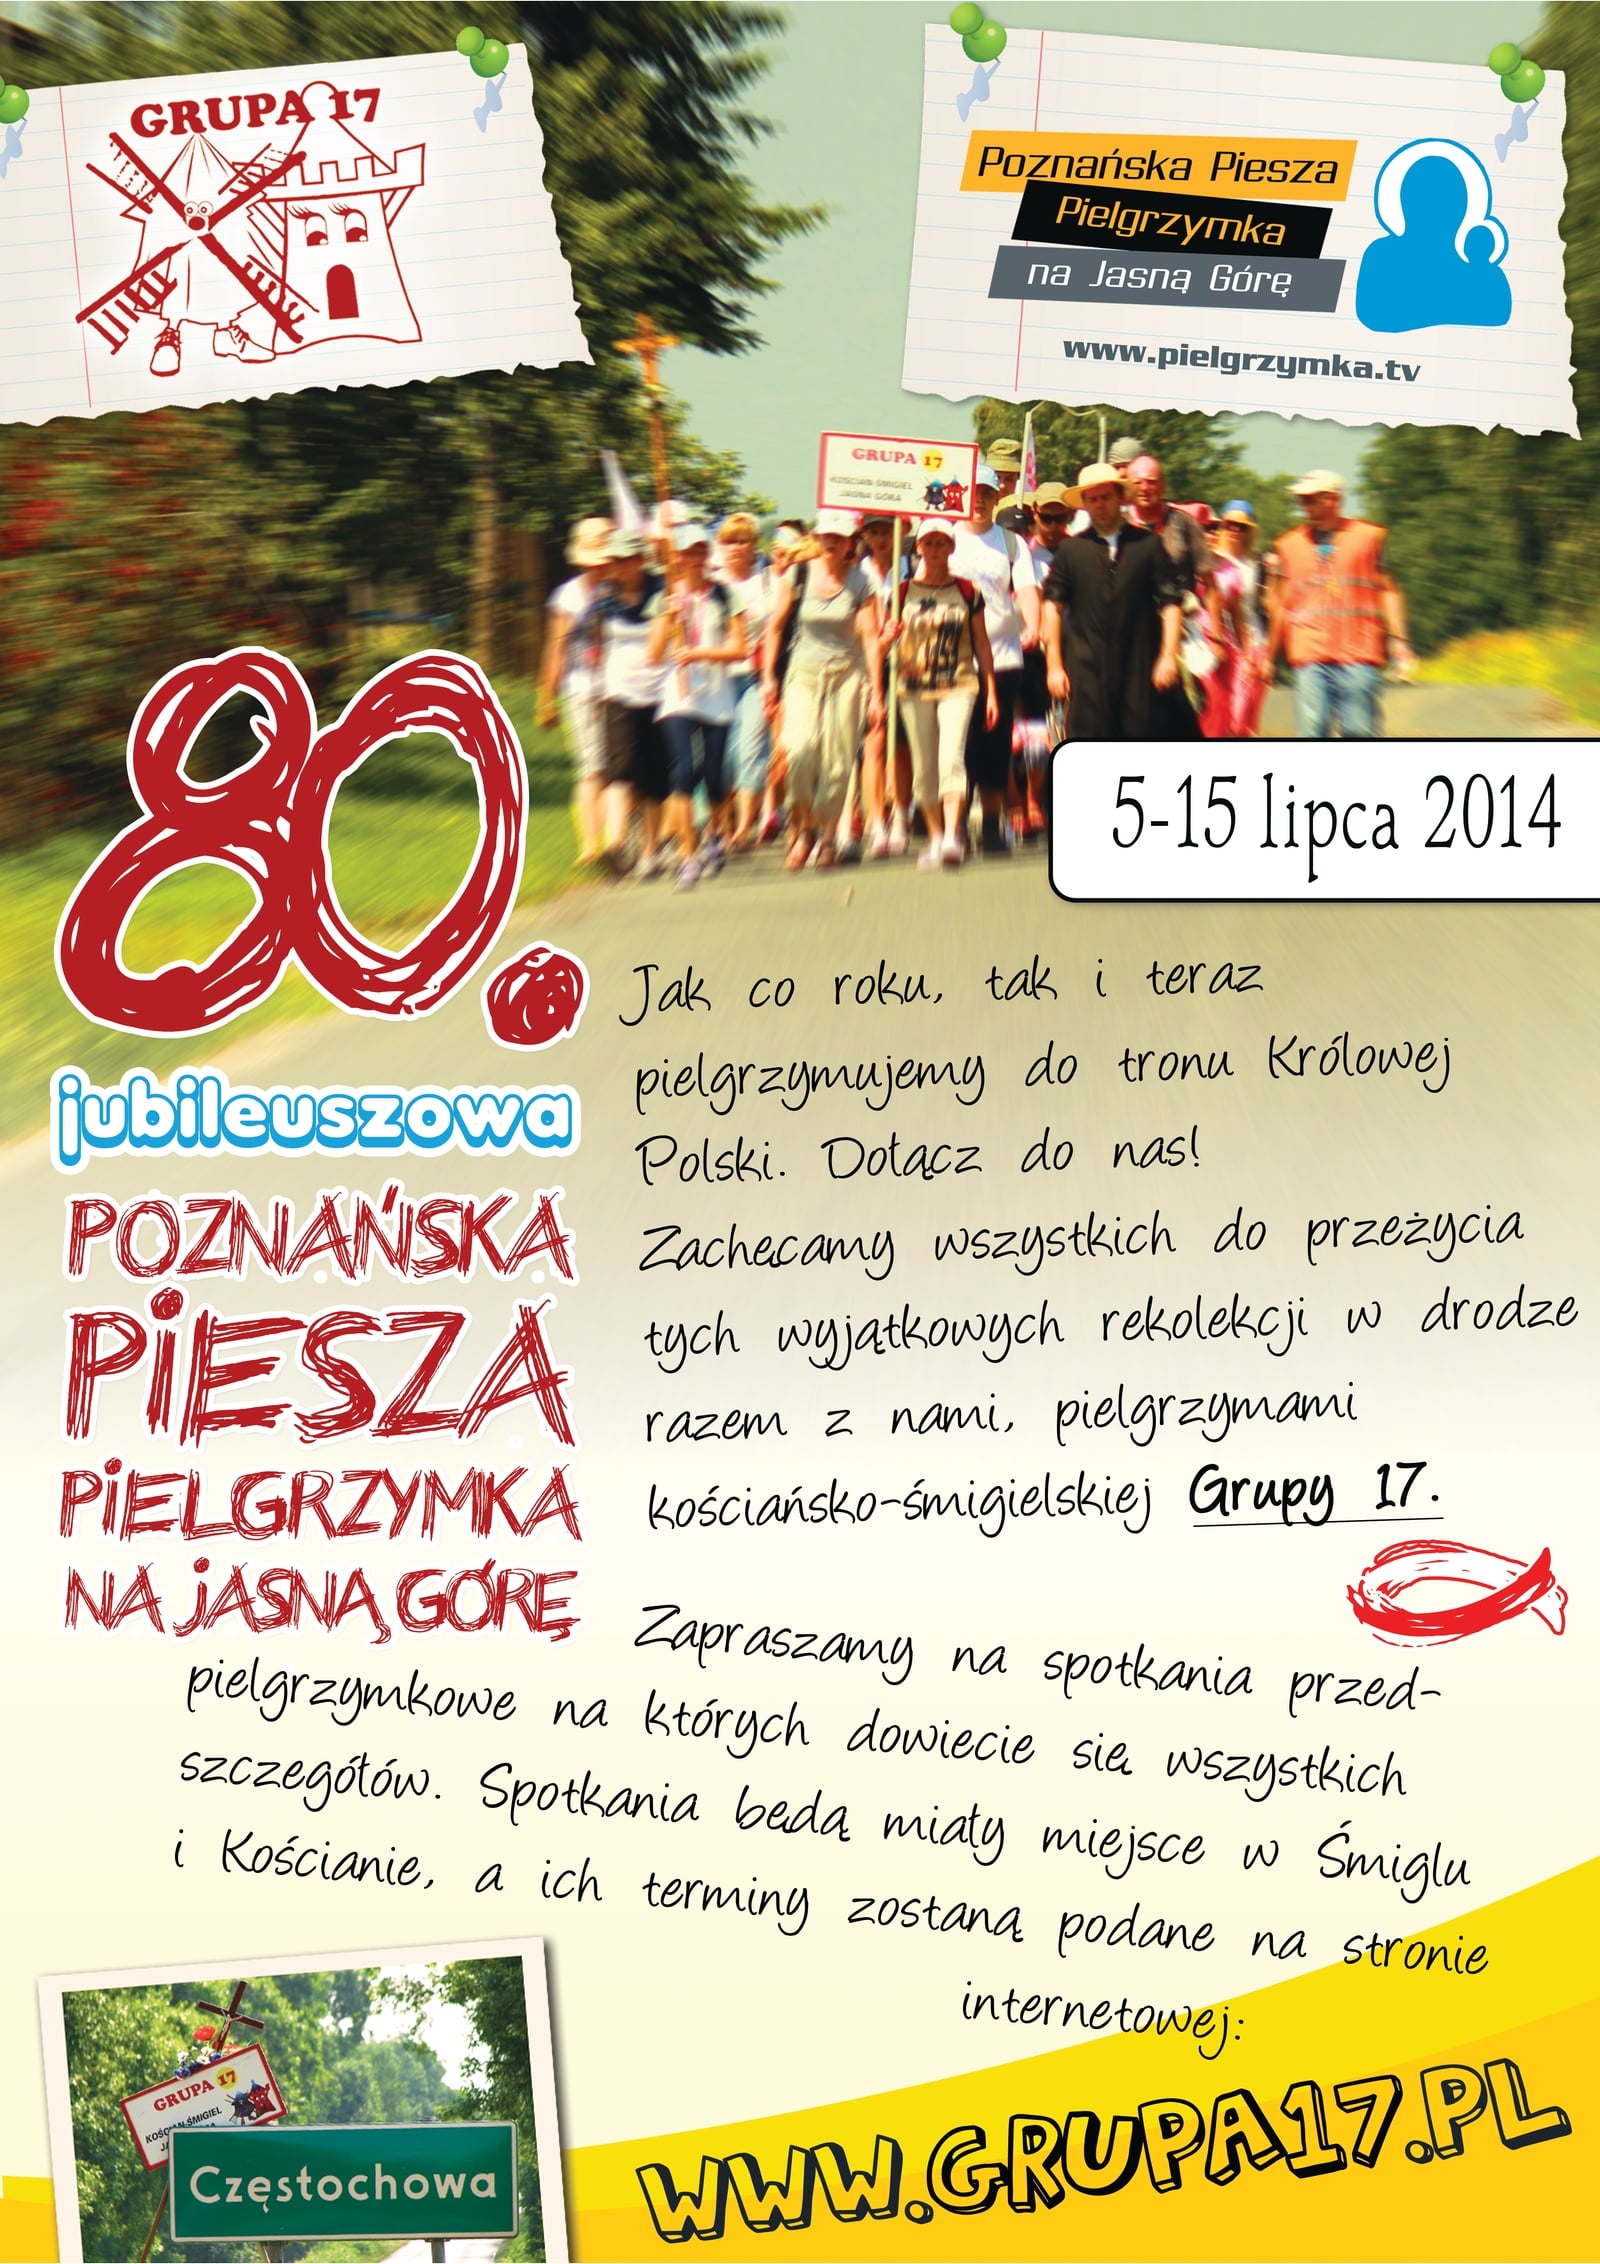 80 Poznańska Piesza Pielgrzymka na Jasną Górę – 05-15.07.2014r.